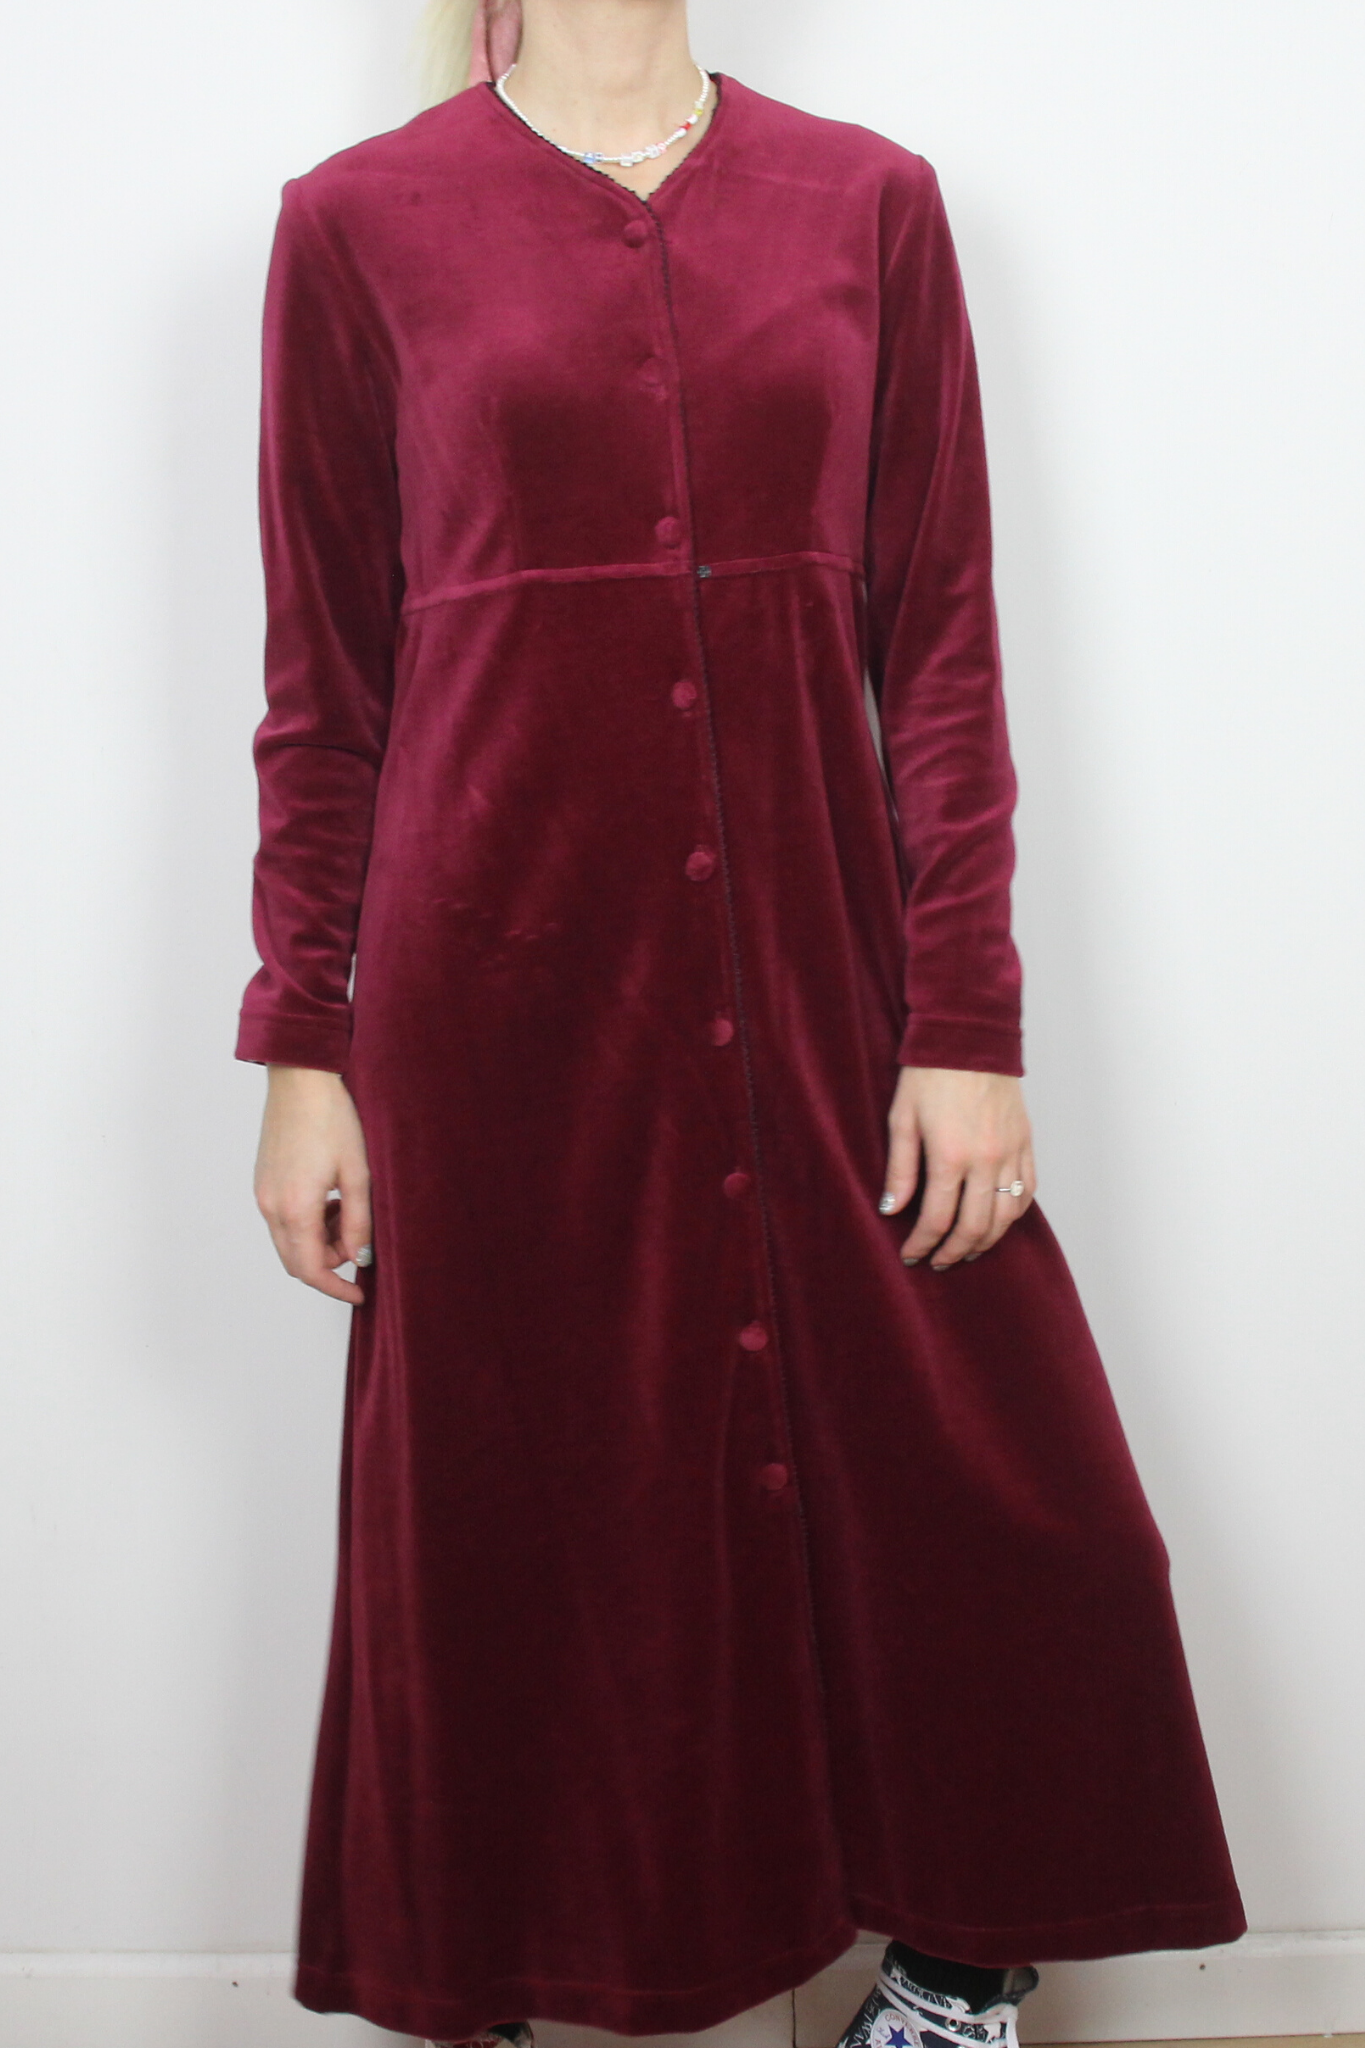 Burgundy velvet dress by Smith & Hawken